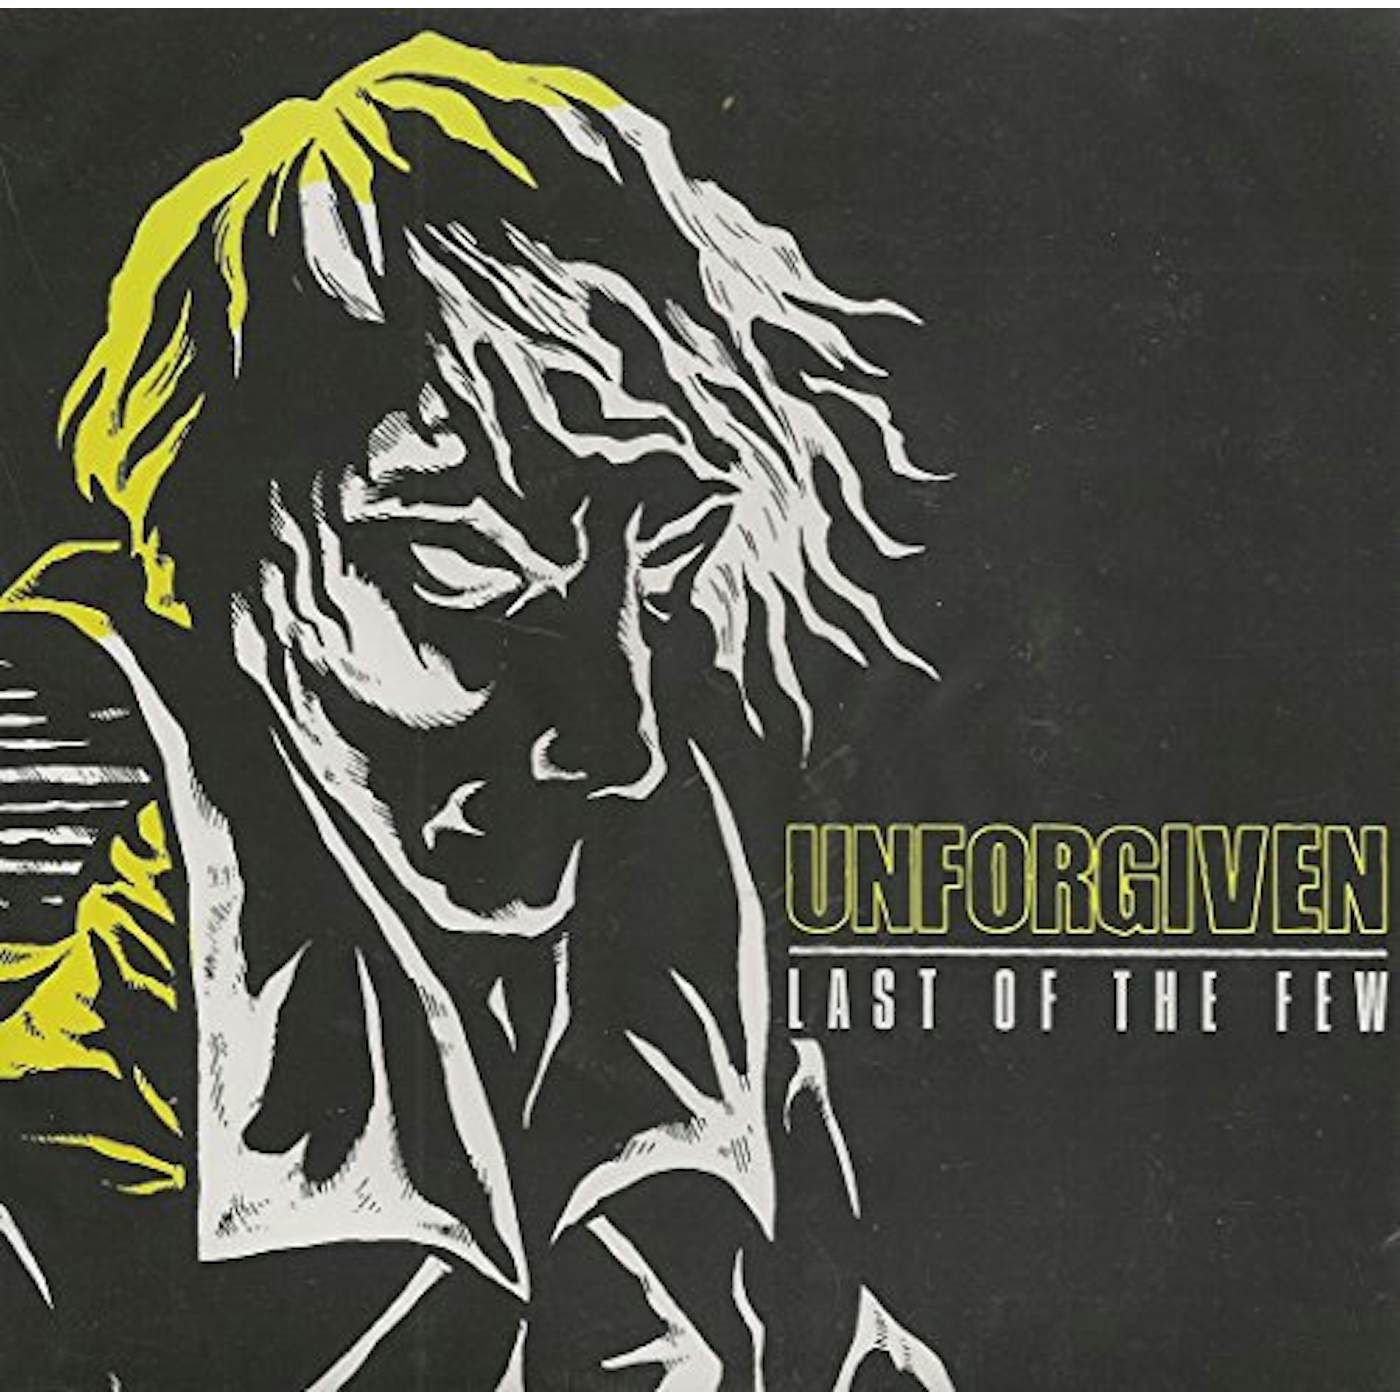 Unforgiven Last of the Few Vinyl Record